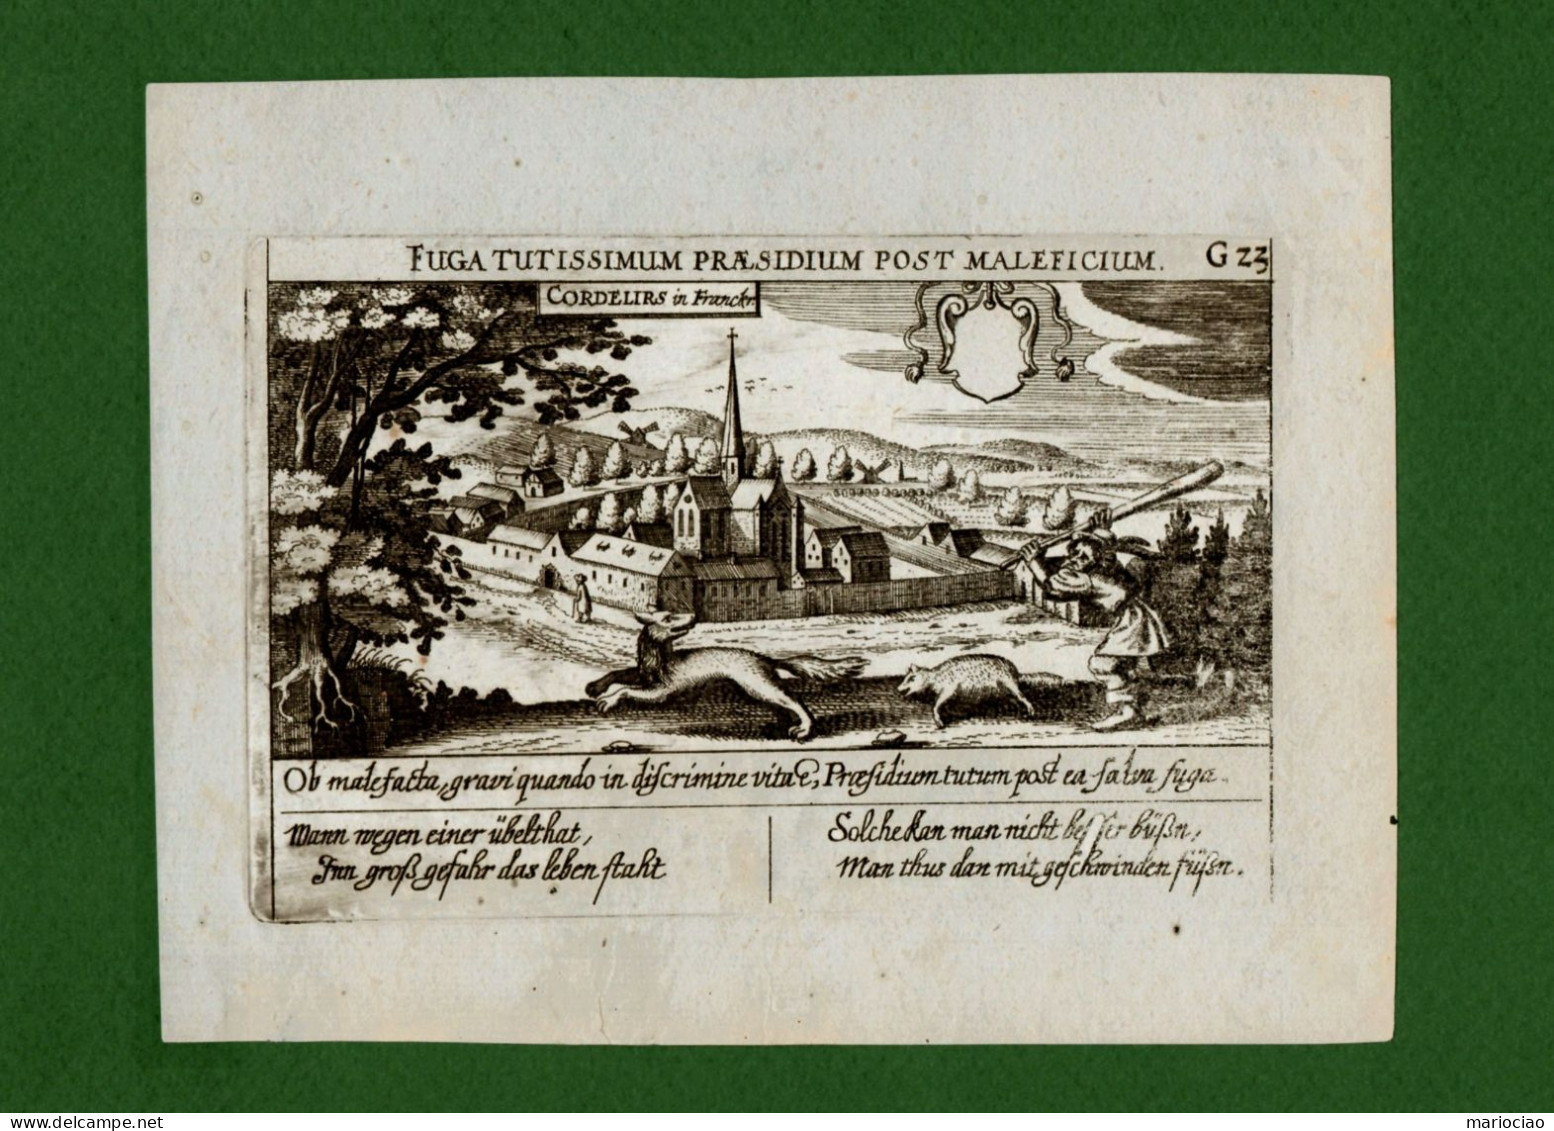 ST-FR PARIS Couvent Des Cordeliers 1630~ CORDELIRS Daniel Meisner FUGA TUTISSIMUM PRAESIDIUM POST MALEFICIUM - Stampe & Incisioni